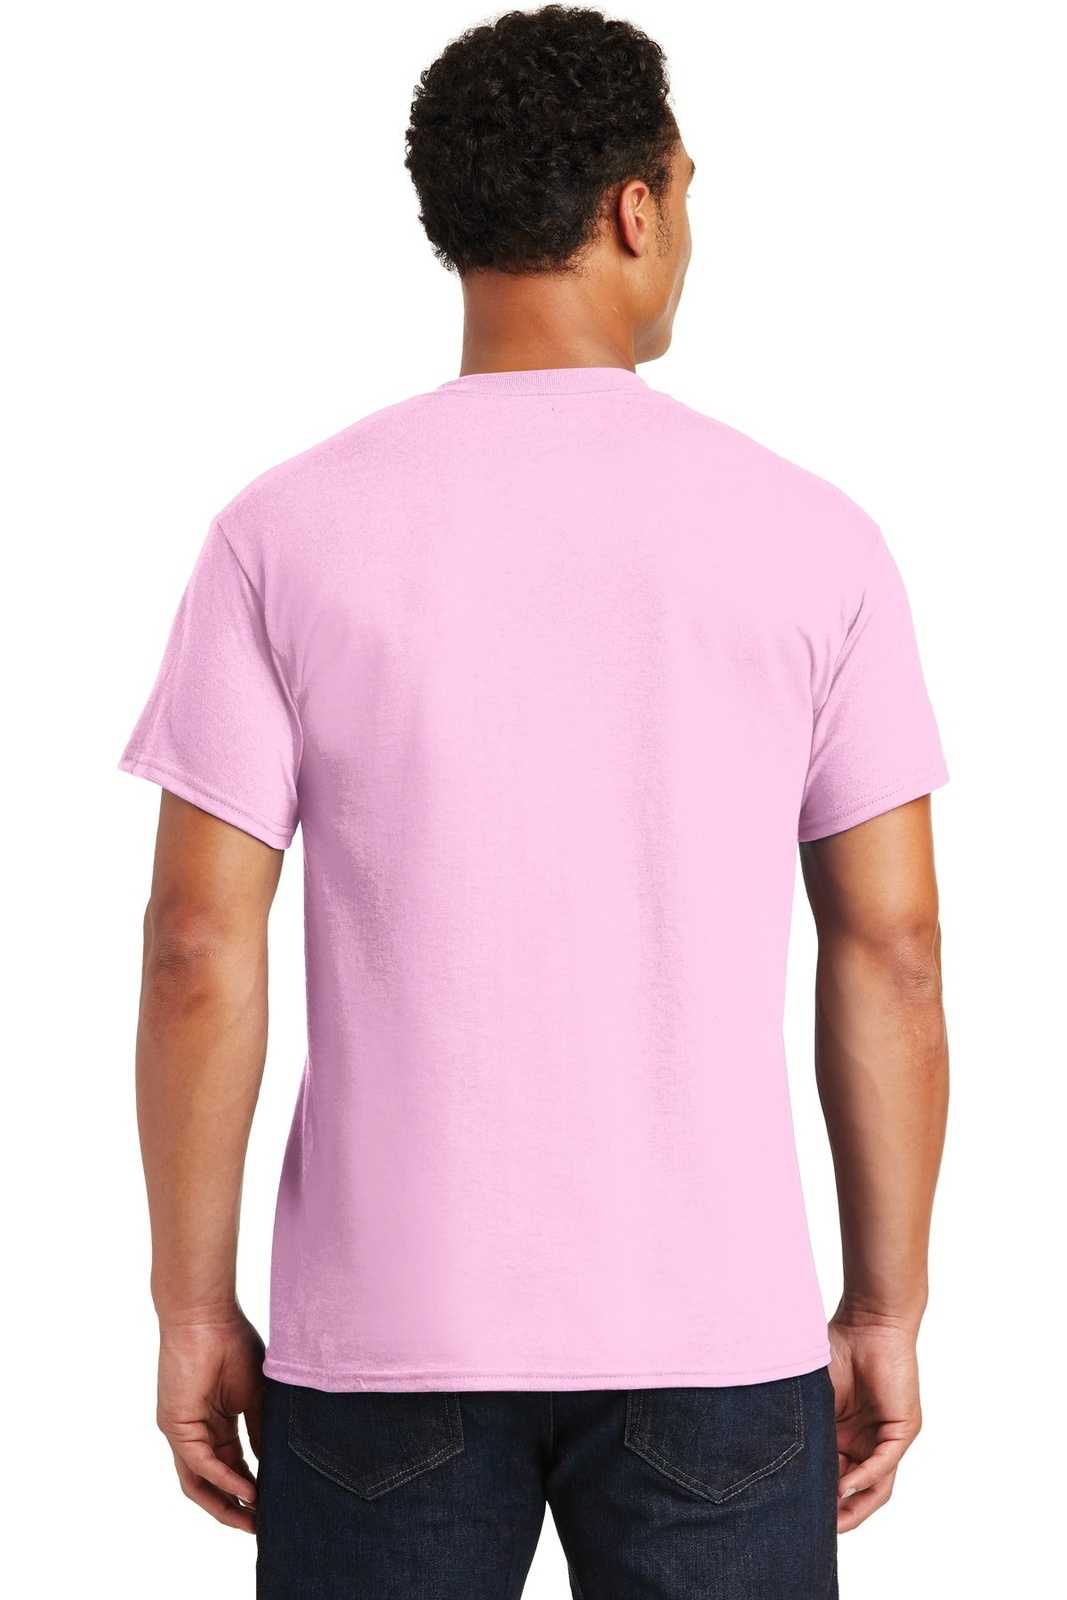 Gildan 8000 Dryblend 50 Cotton/50 Poly T-Shirt - Light Pink - HIT a Double